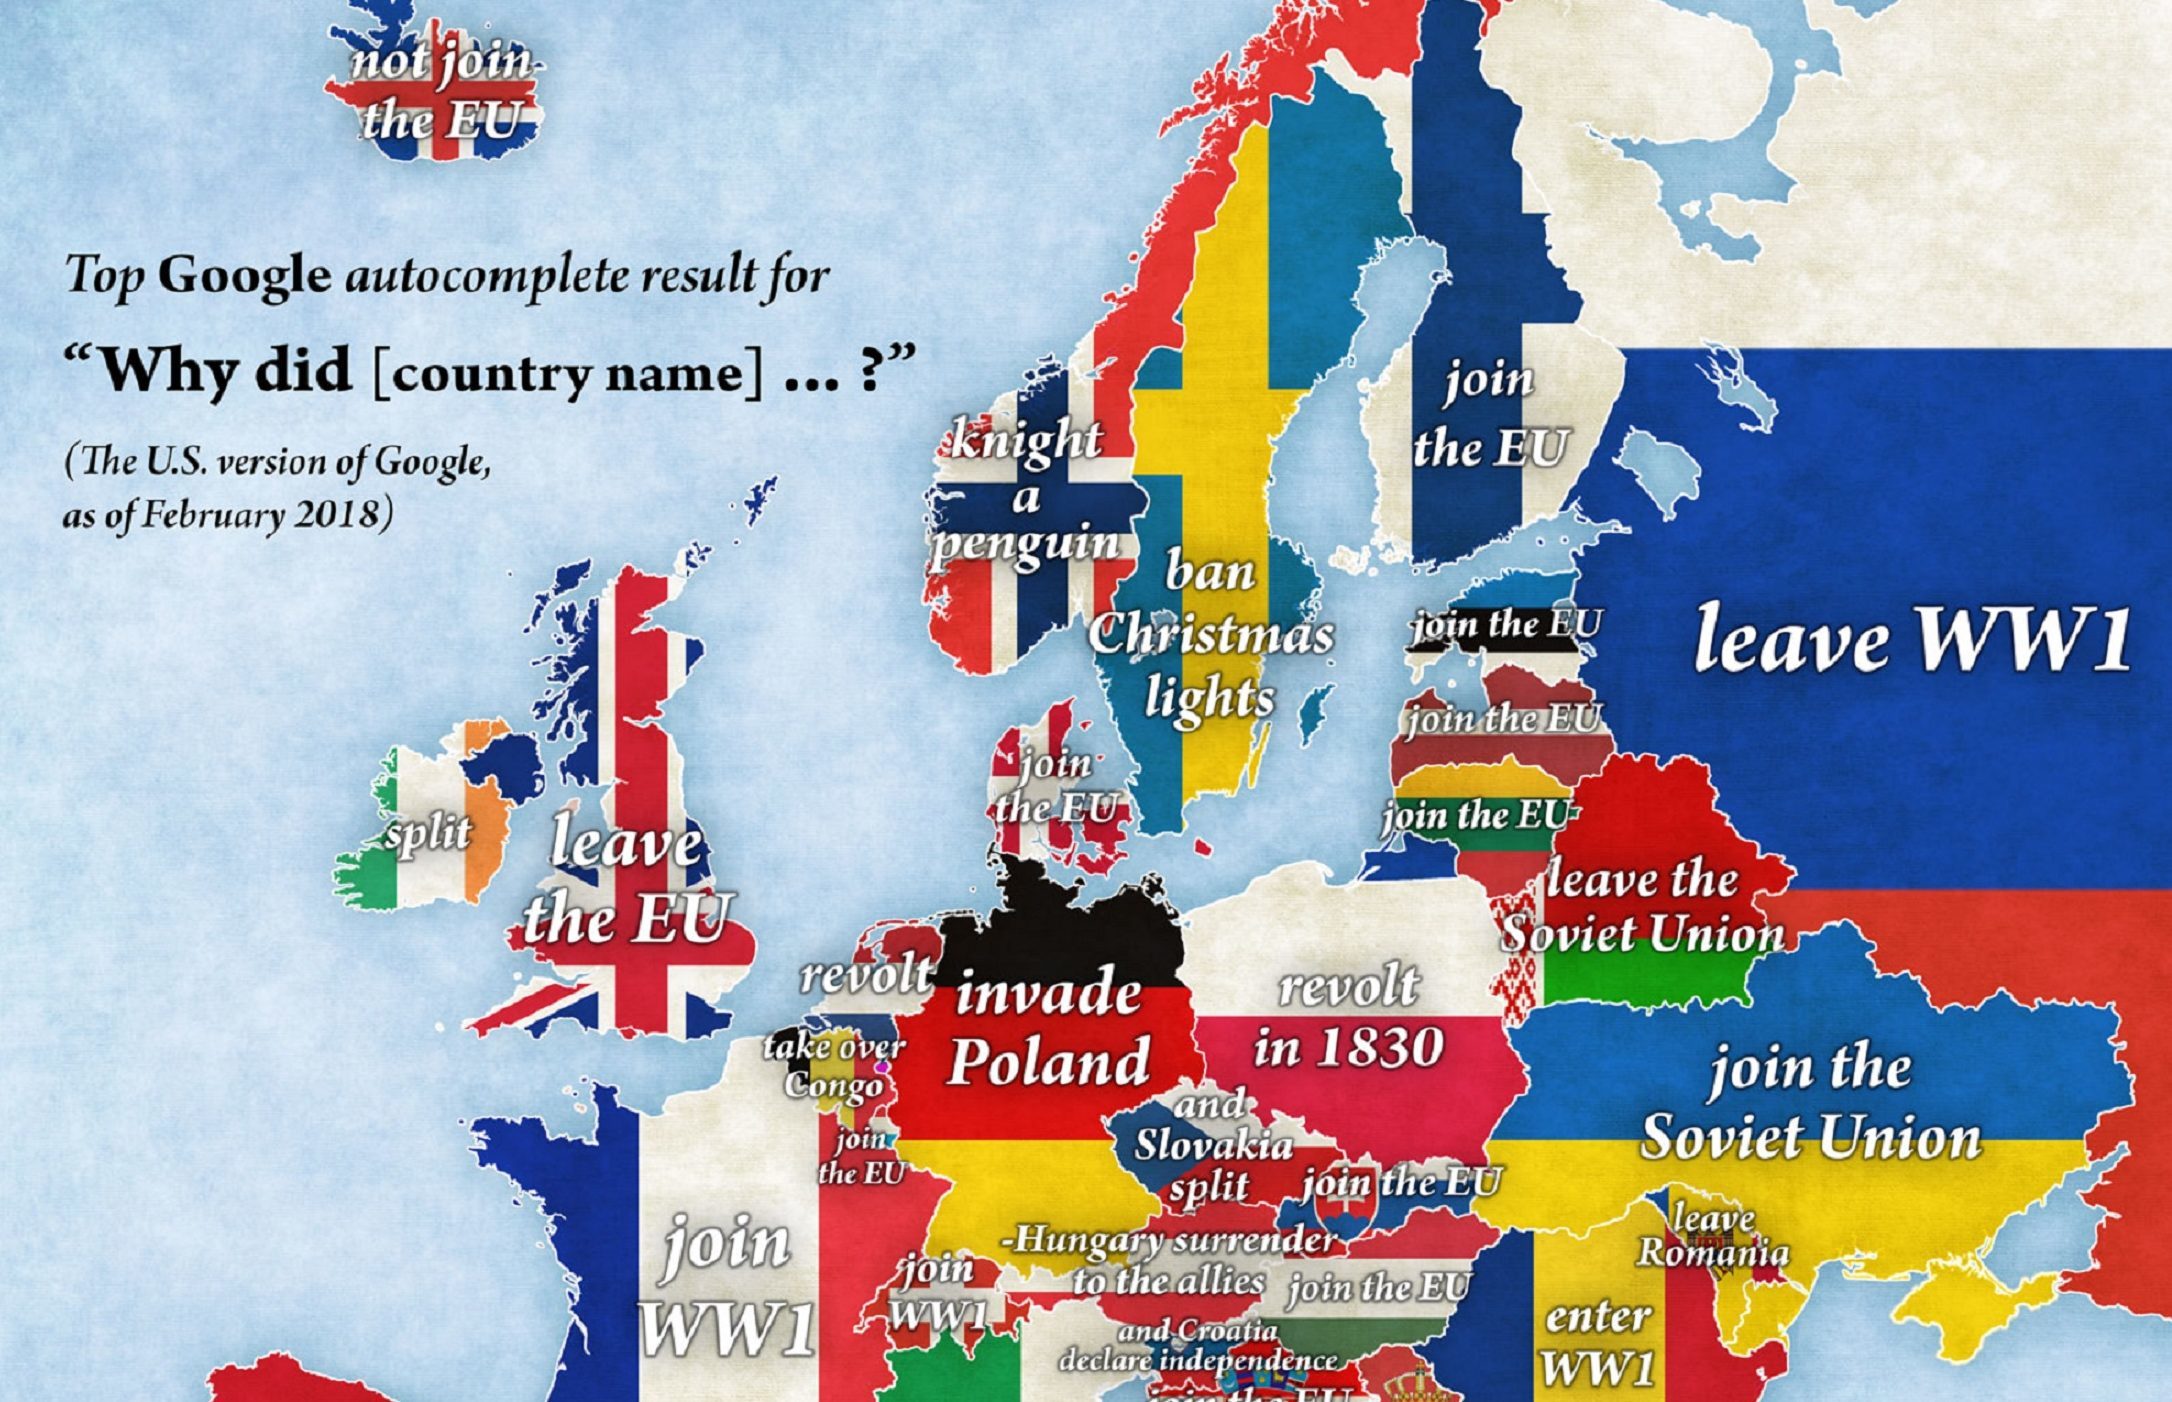 Map of Europe (Jakub Marian)